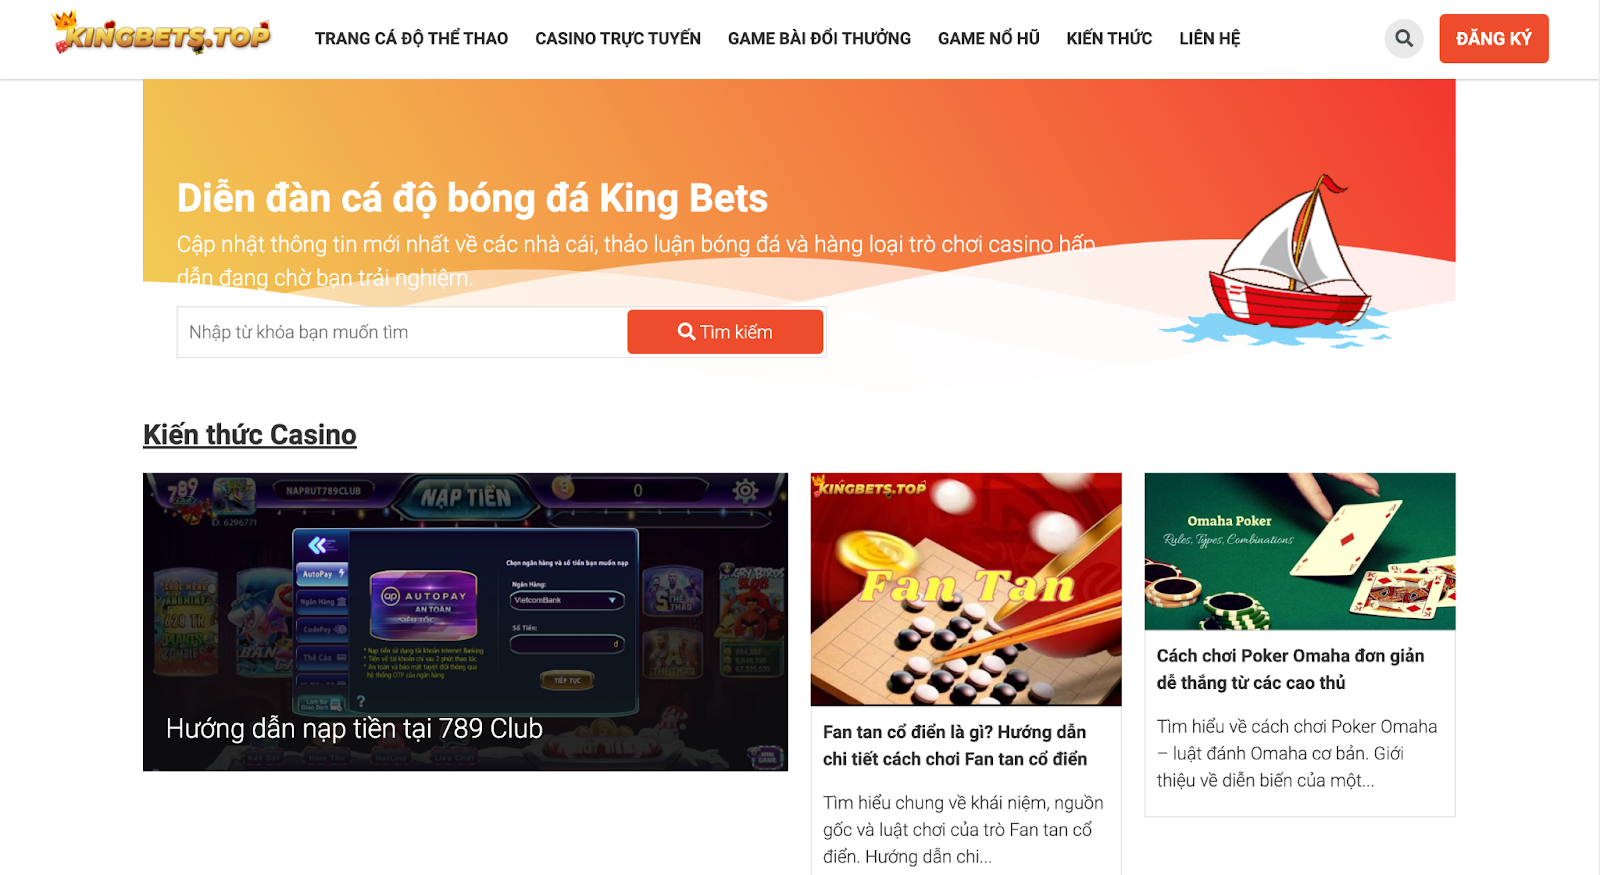 Kingbets.top - Chuyên trang tổng hợp và đánh giá các trang cá độ thể thao uy tín